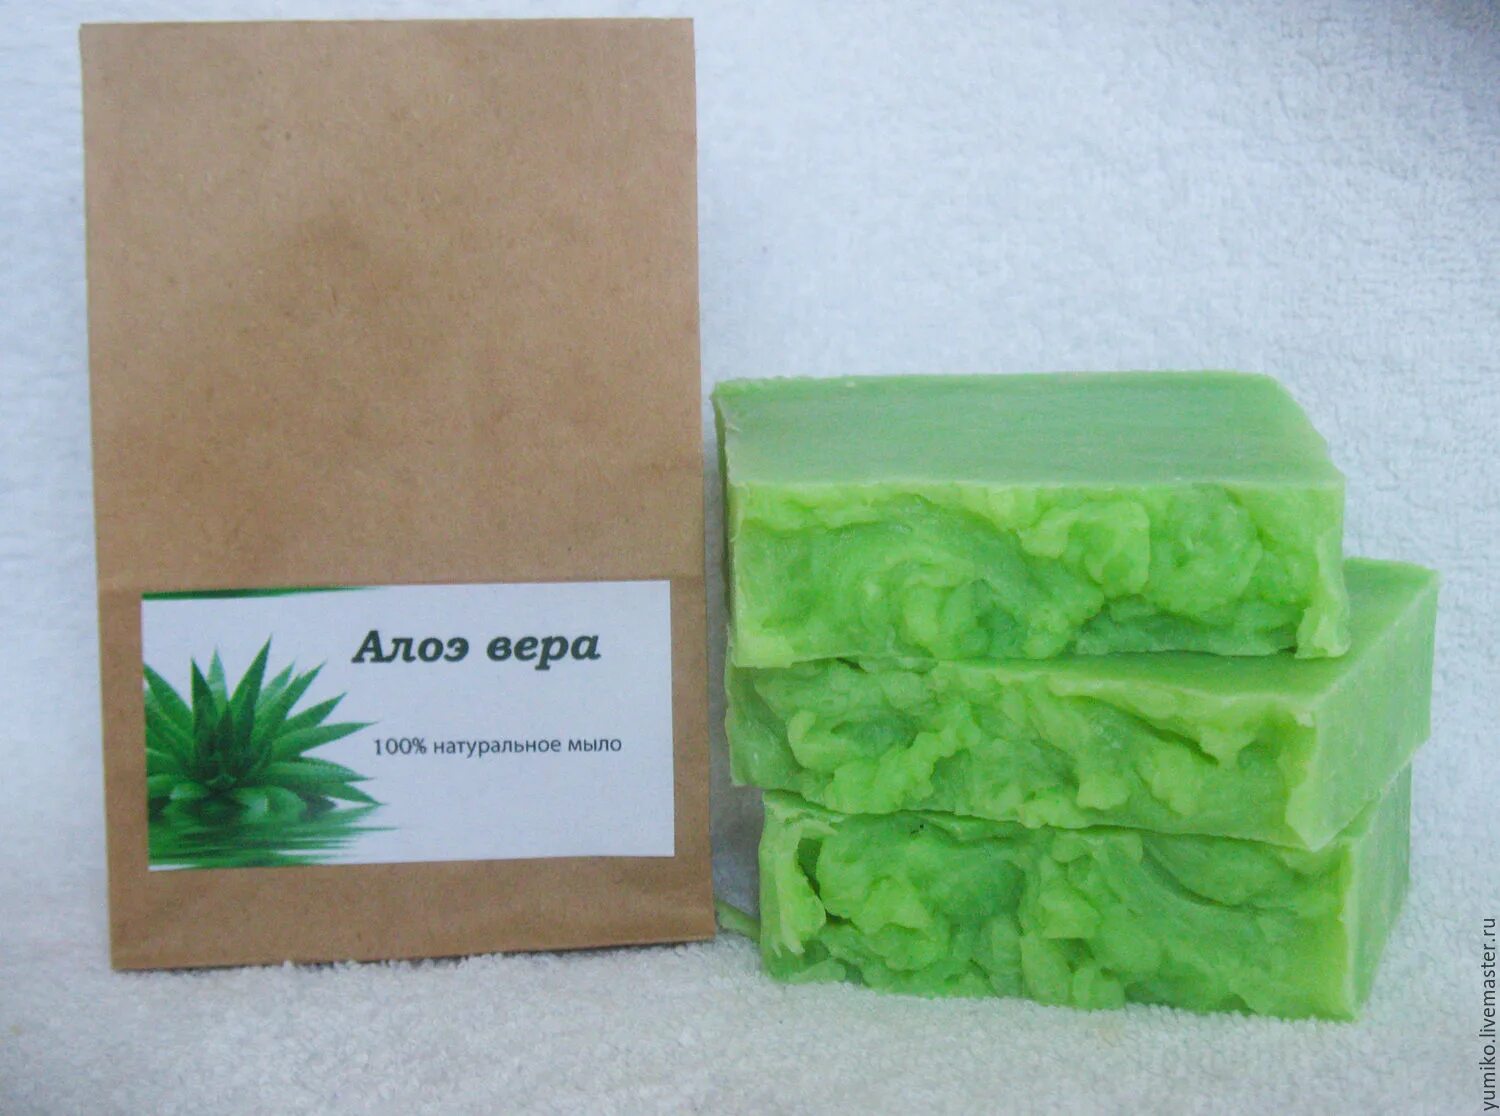 Мило Aloe Vera crahules Soap. Soap Aloe Vera Турция. Мыло Loofah Soap алоэ.